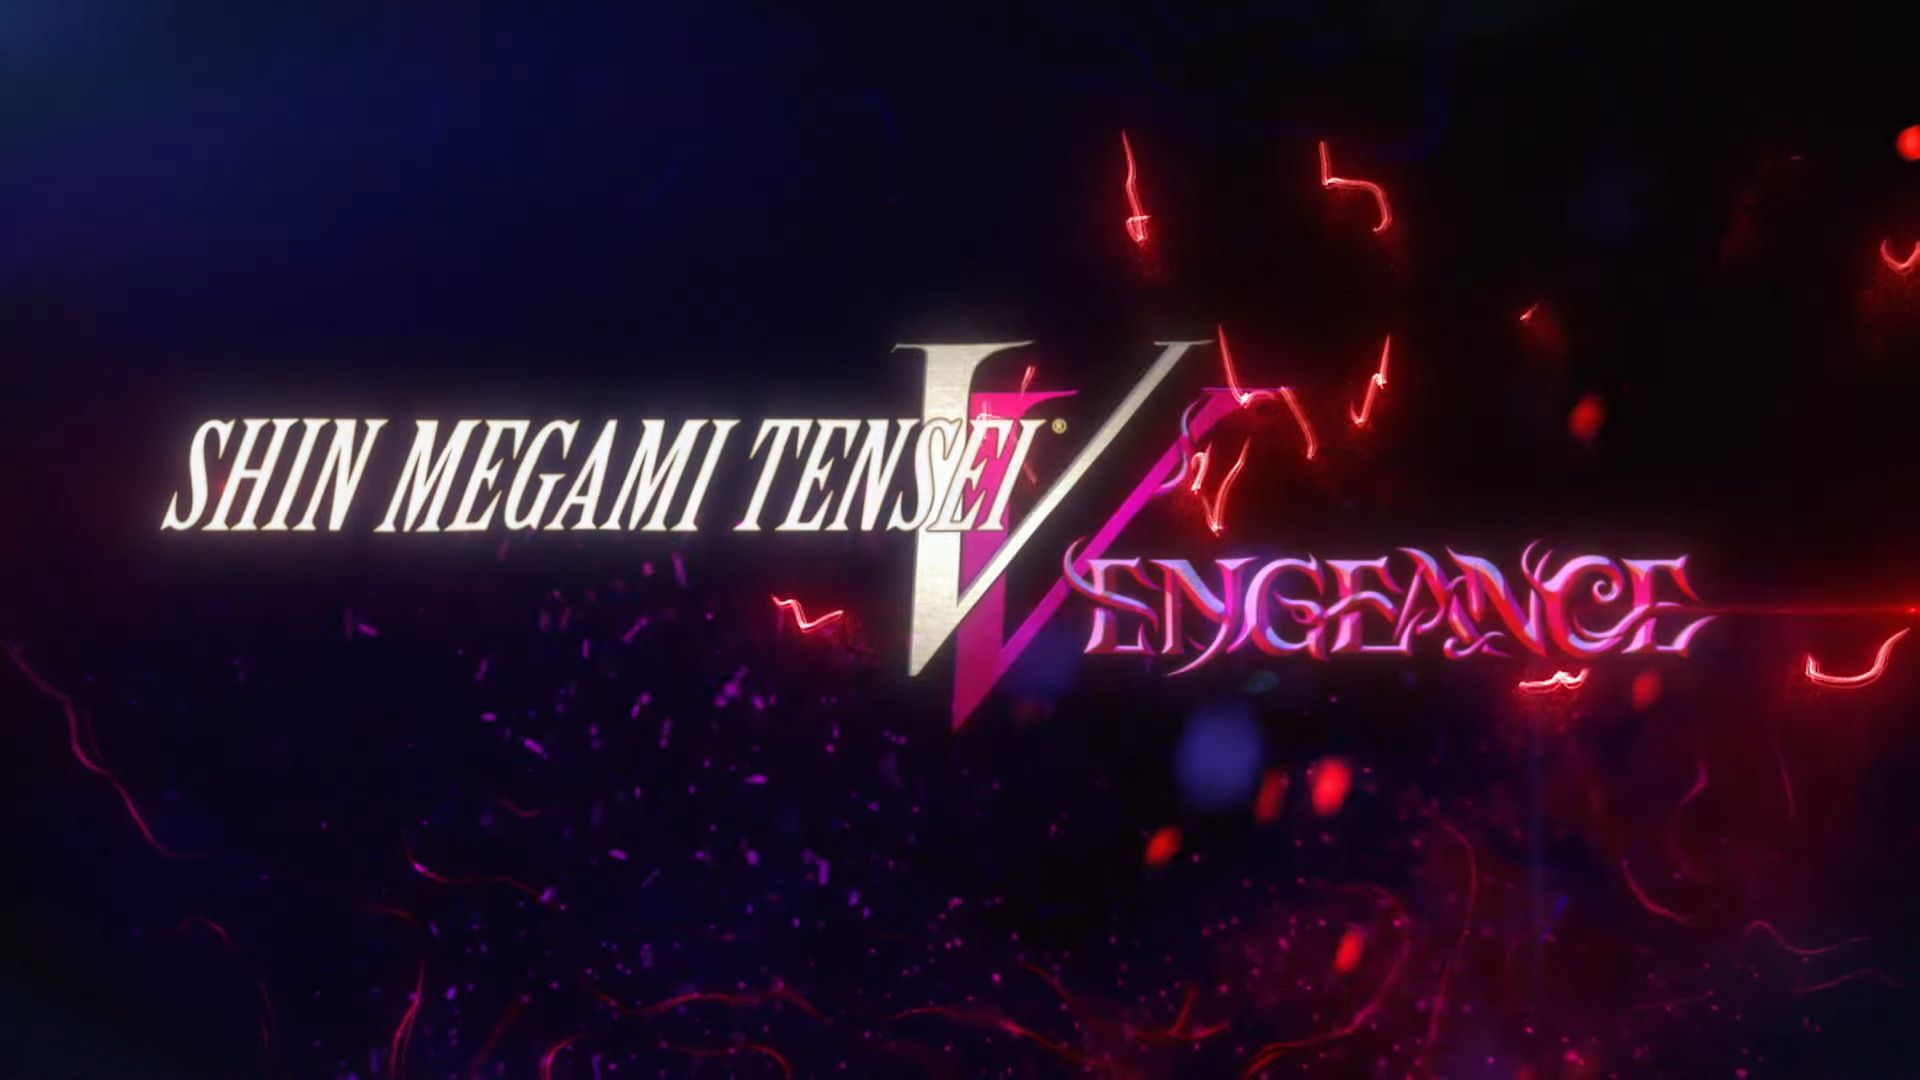 #Shin Megami Tensei V: Vengeance ist offiziell und bietet eine brandneue Storyline